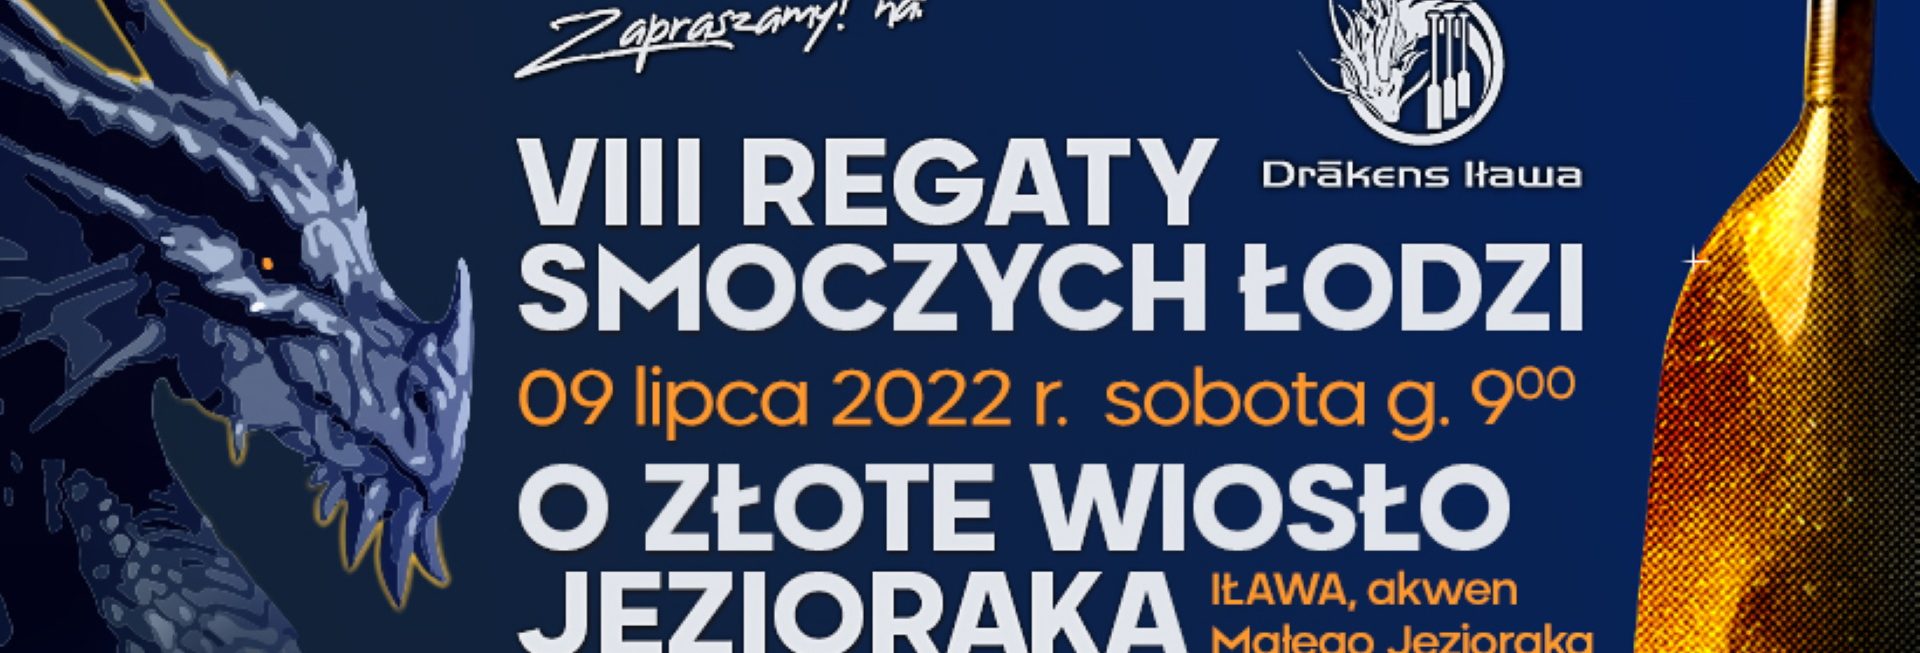 Plakat zapraszający do Iławy na 8. edycję Regat Smoczych Łodzi o Złote Wiosło Jezioraka Iława 2022.